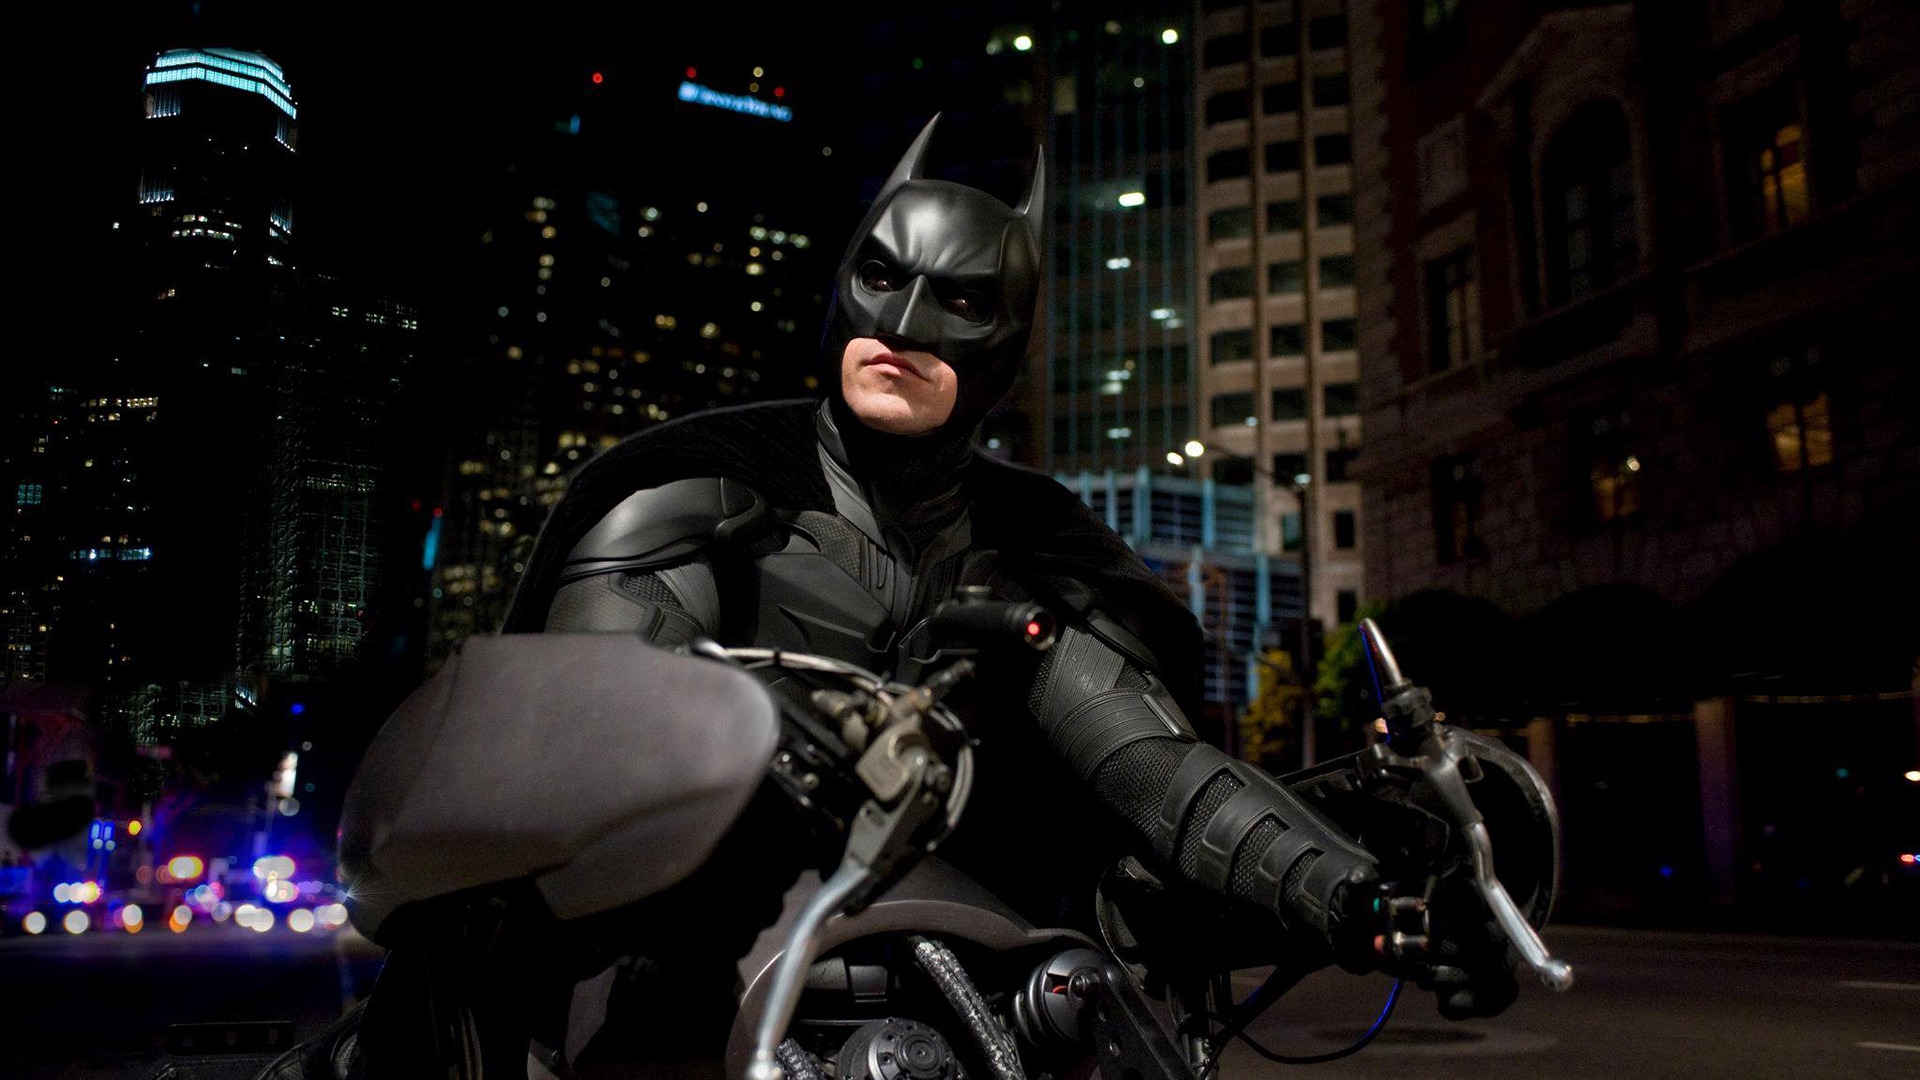 Batman on Bike for 1920 x 1080 HDTV 1080p resolution